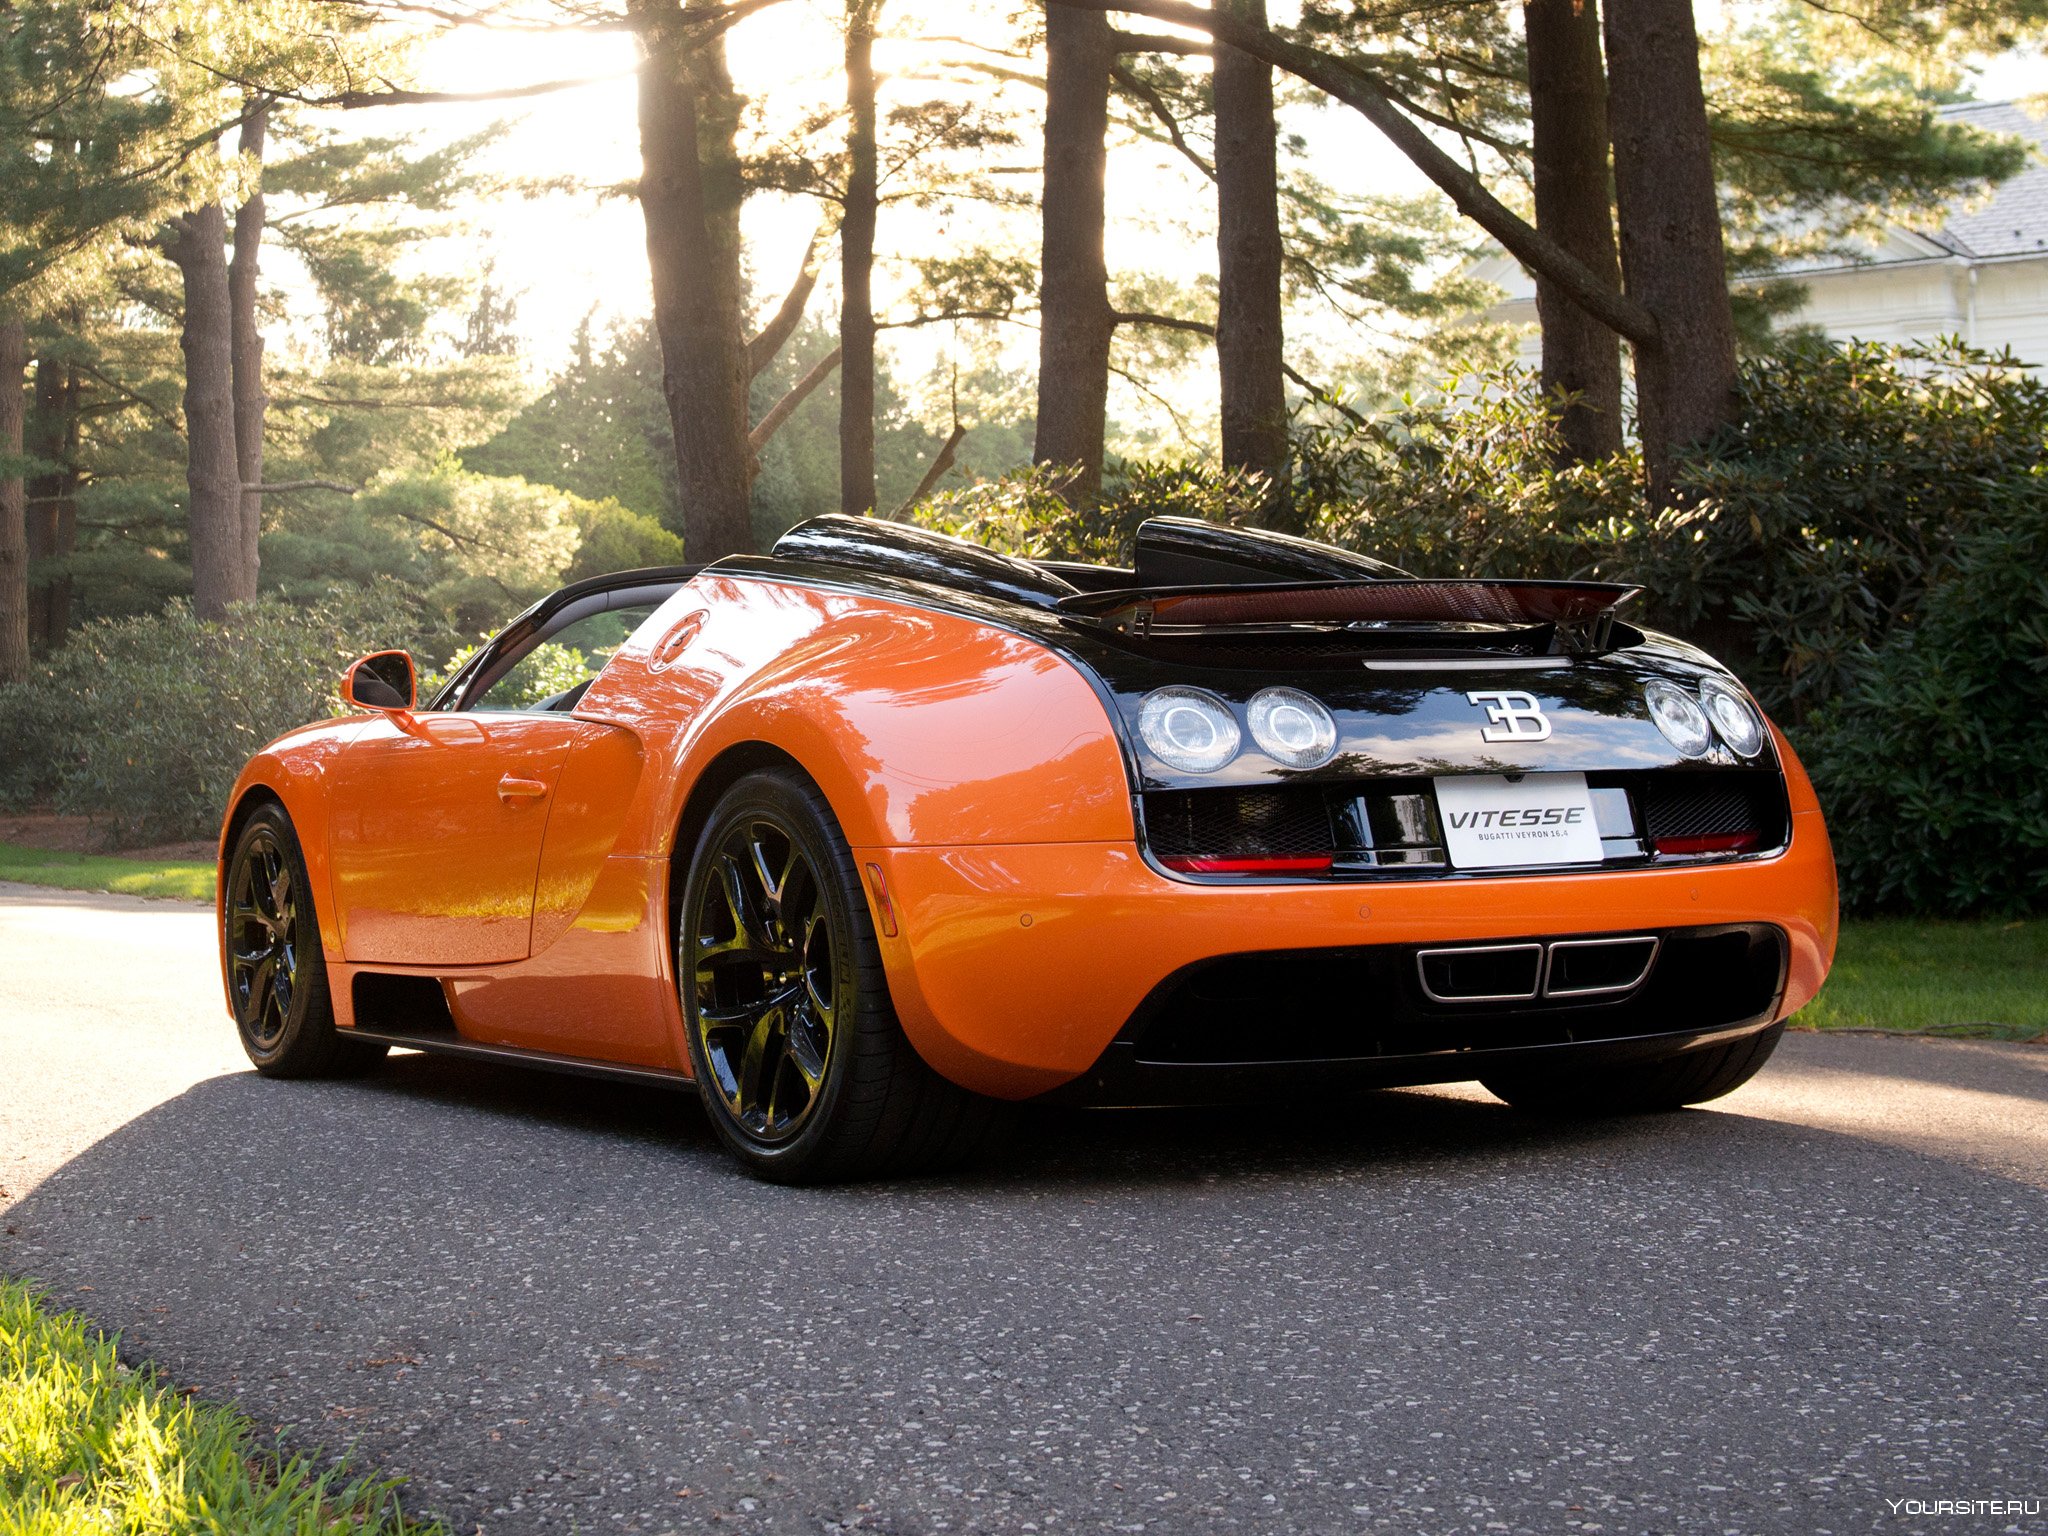 Сайт про автомобили. Bugatti Veyron Vitesse. Бугатти Вейрон черно оранжевая. Бугатти Вейрон Витесс оранжевый. Bugatti Veyron оранжевая.